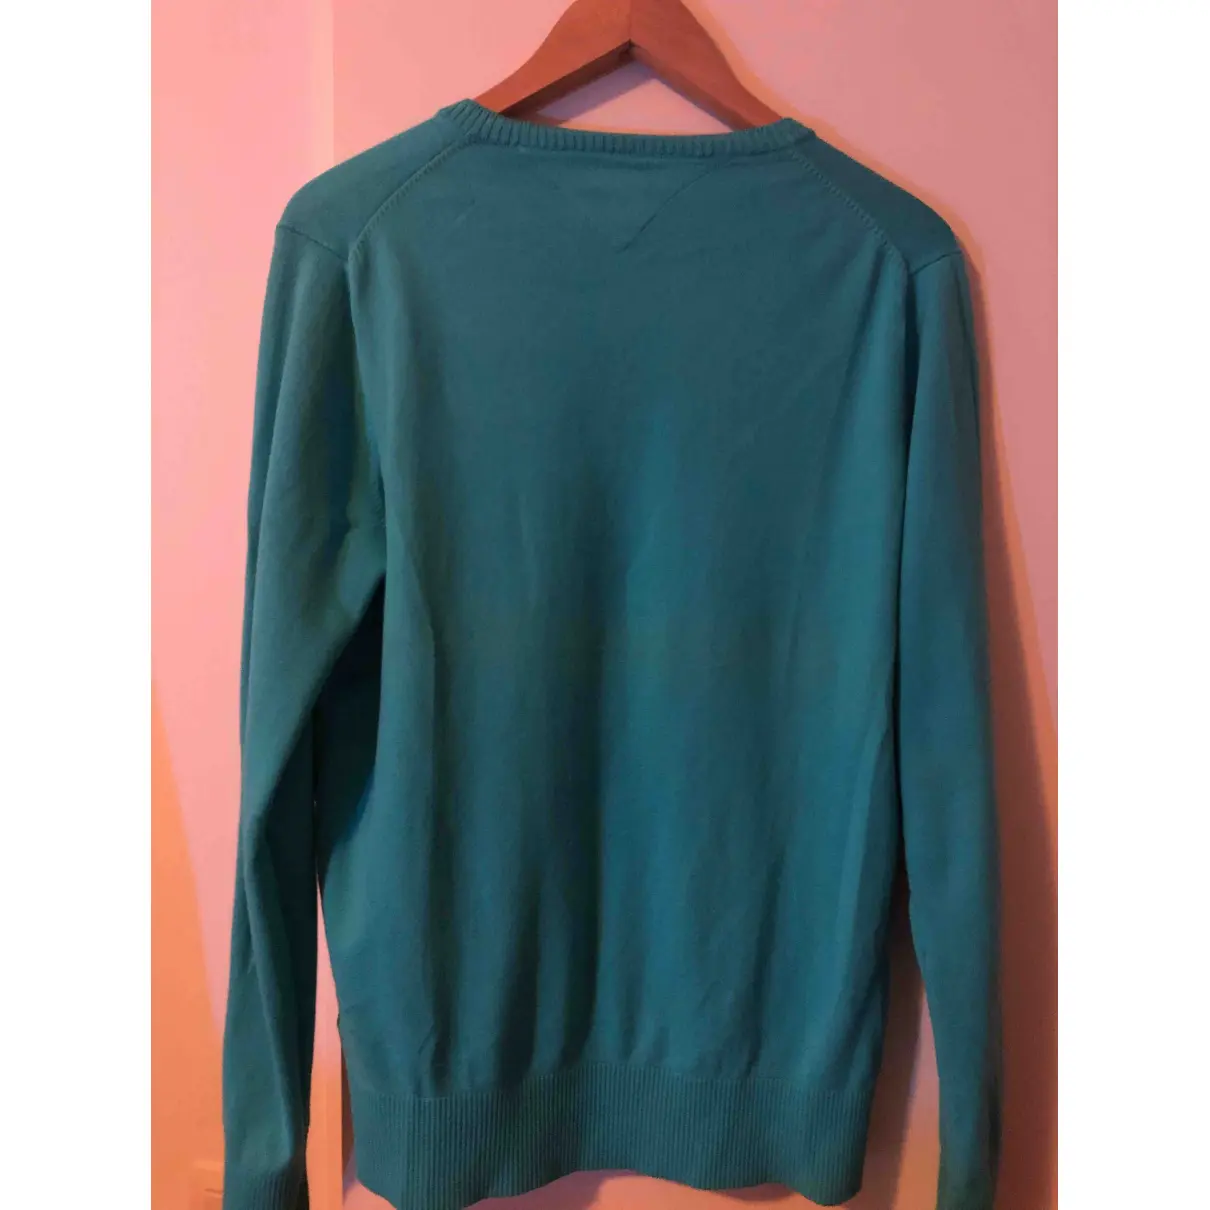 Buy Tommy Hilfiger Green Cotton Knitwear & Sweatshirt online